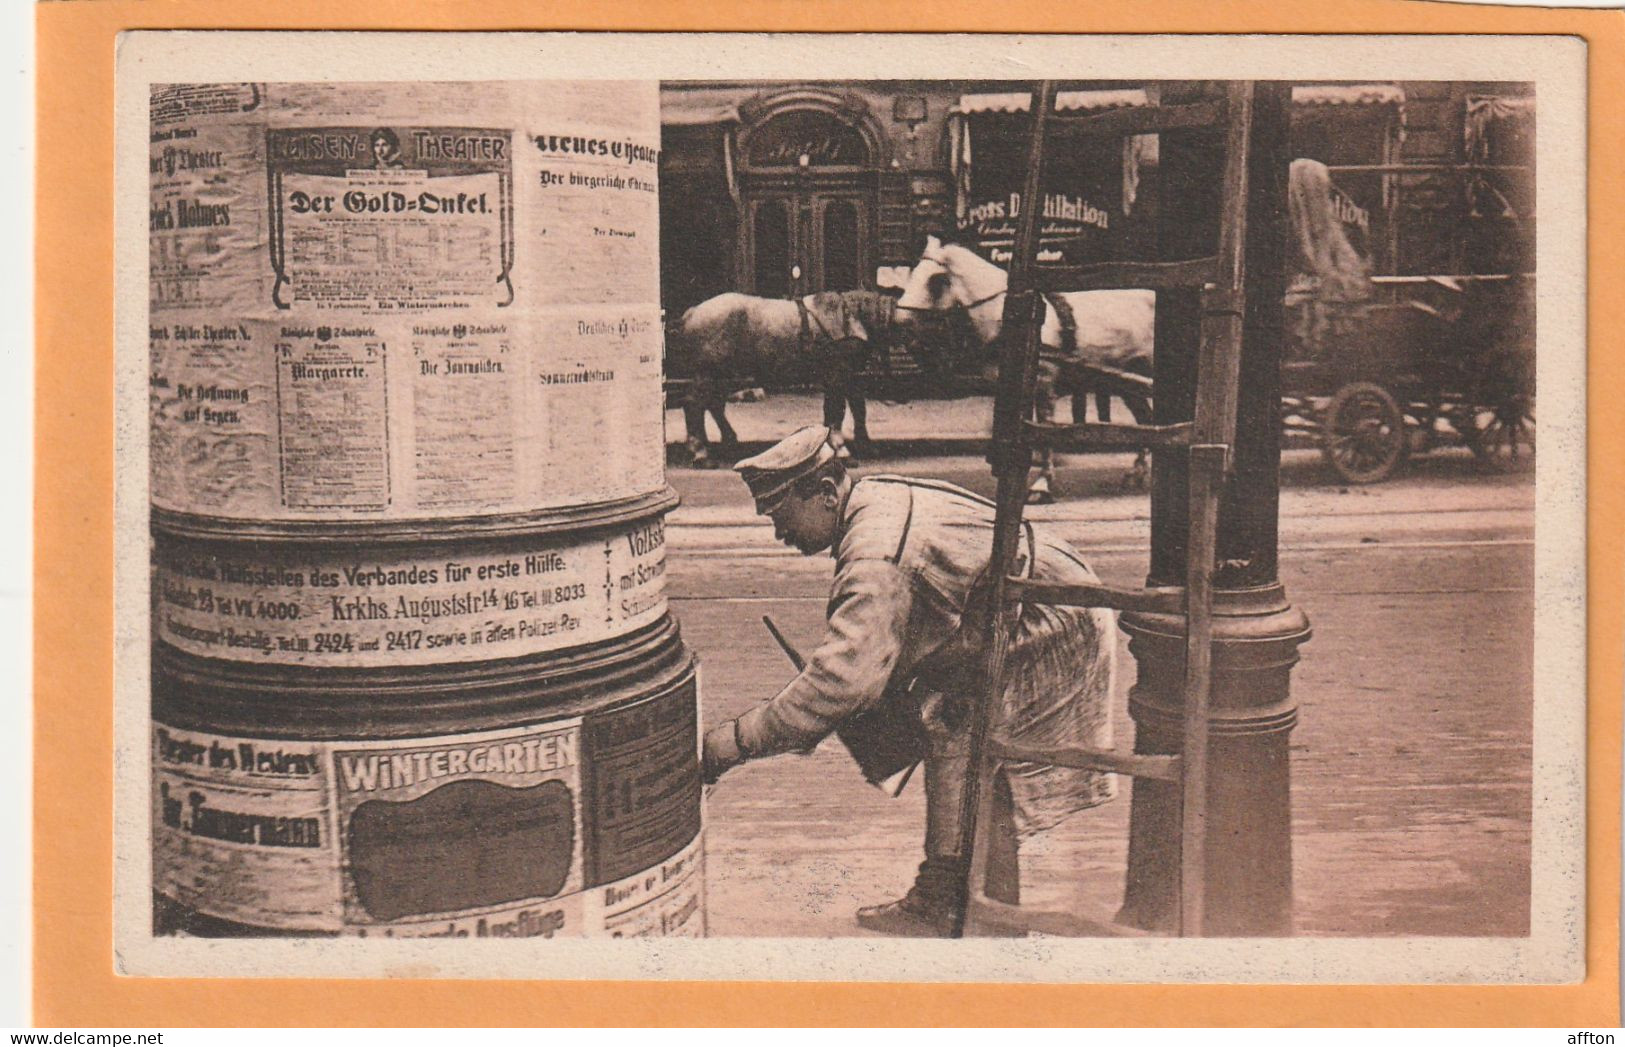 Berlin Zettelankleber Types 1908 Postcard - Mitte